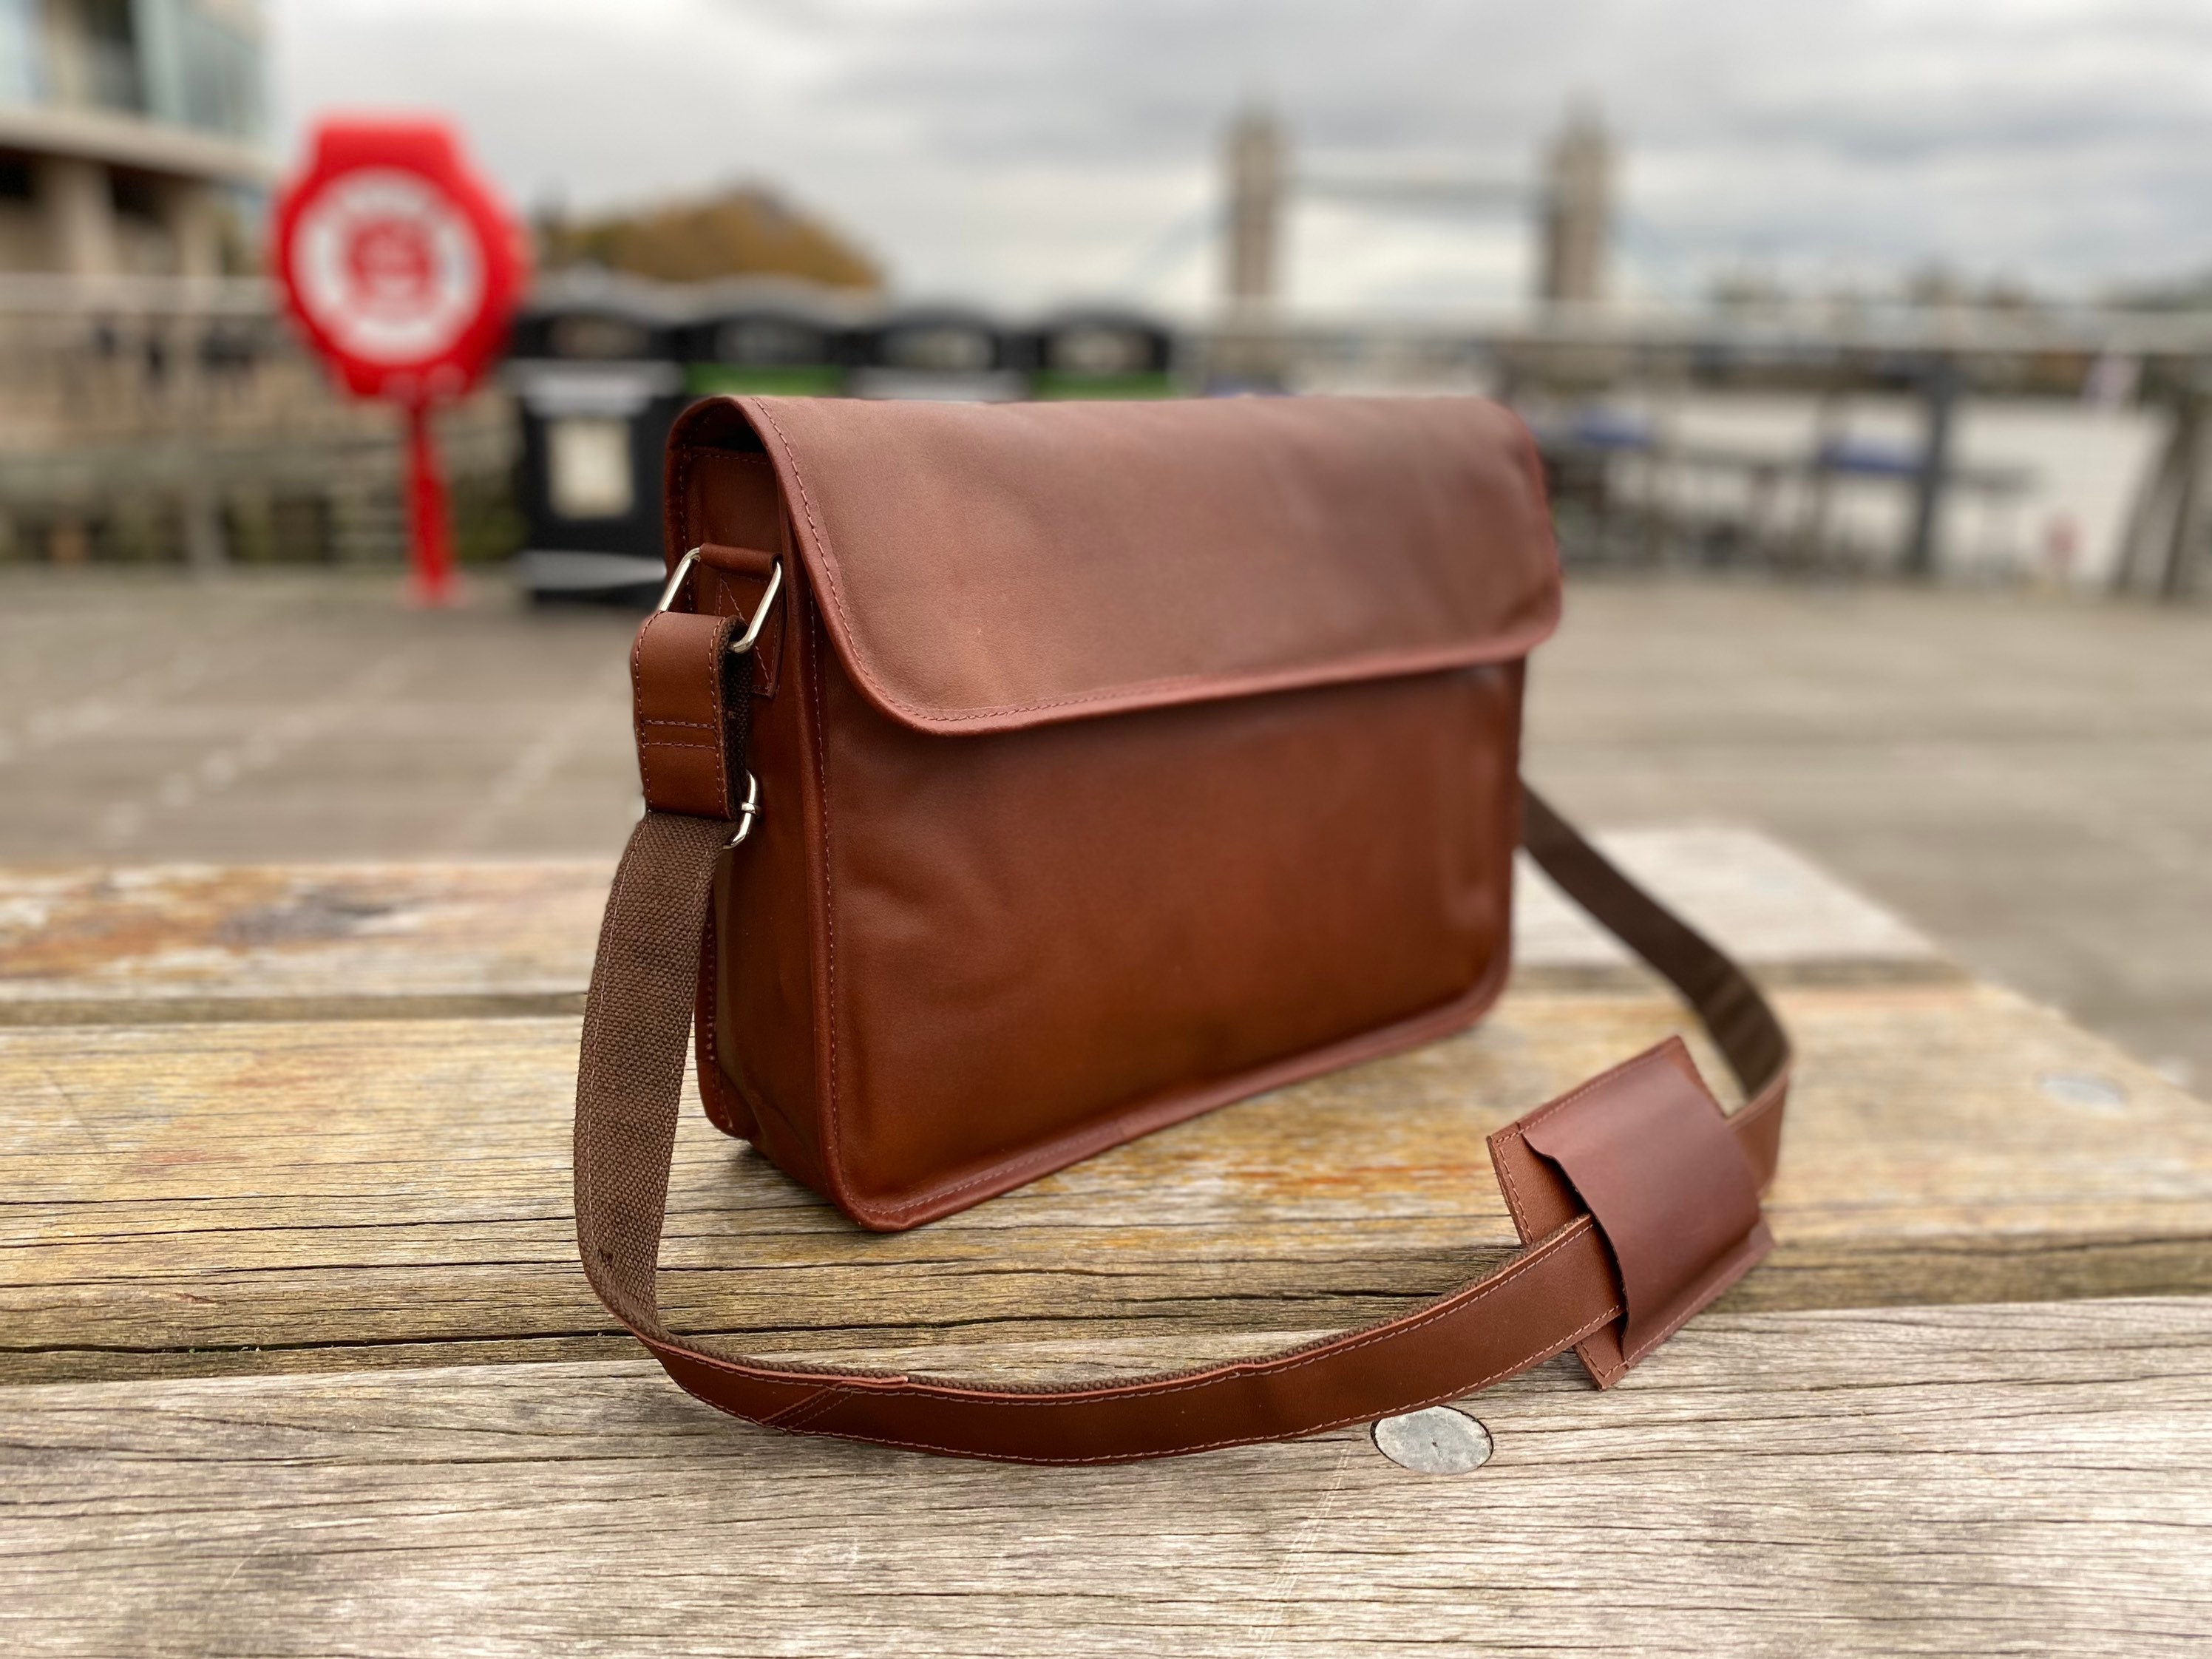 New Leather Business Genuine Briefcase Handbag Laptop Shoulder Messenger Bag UK 